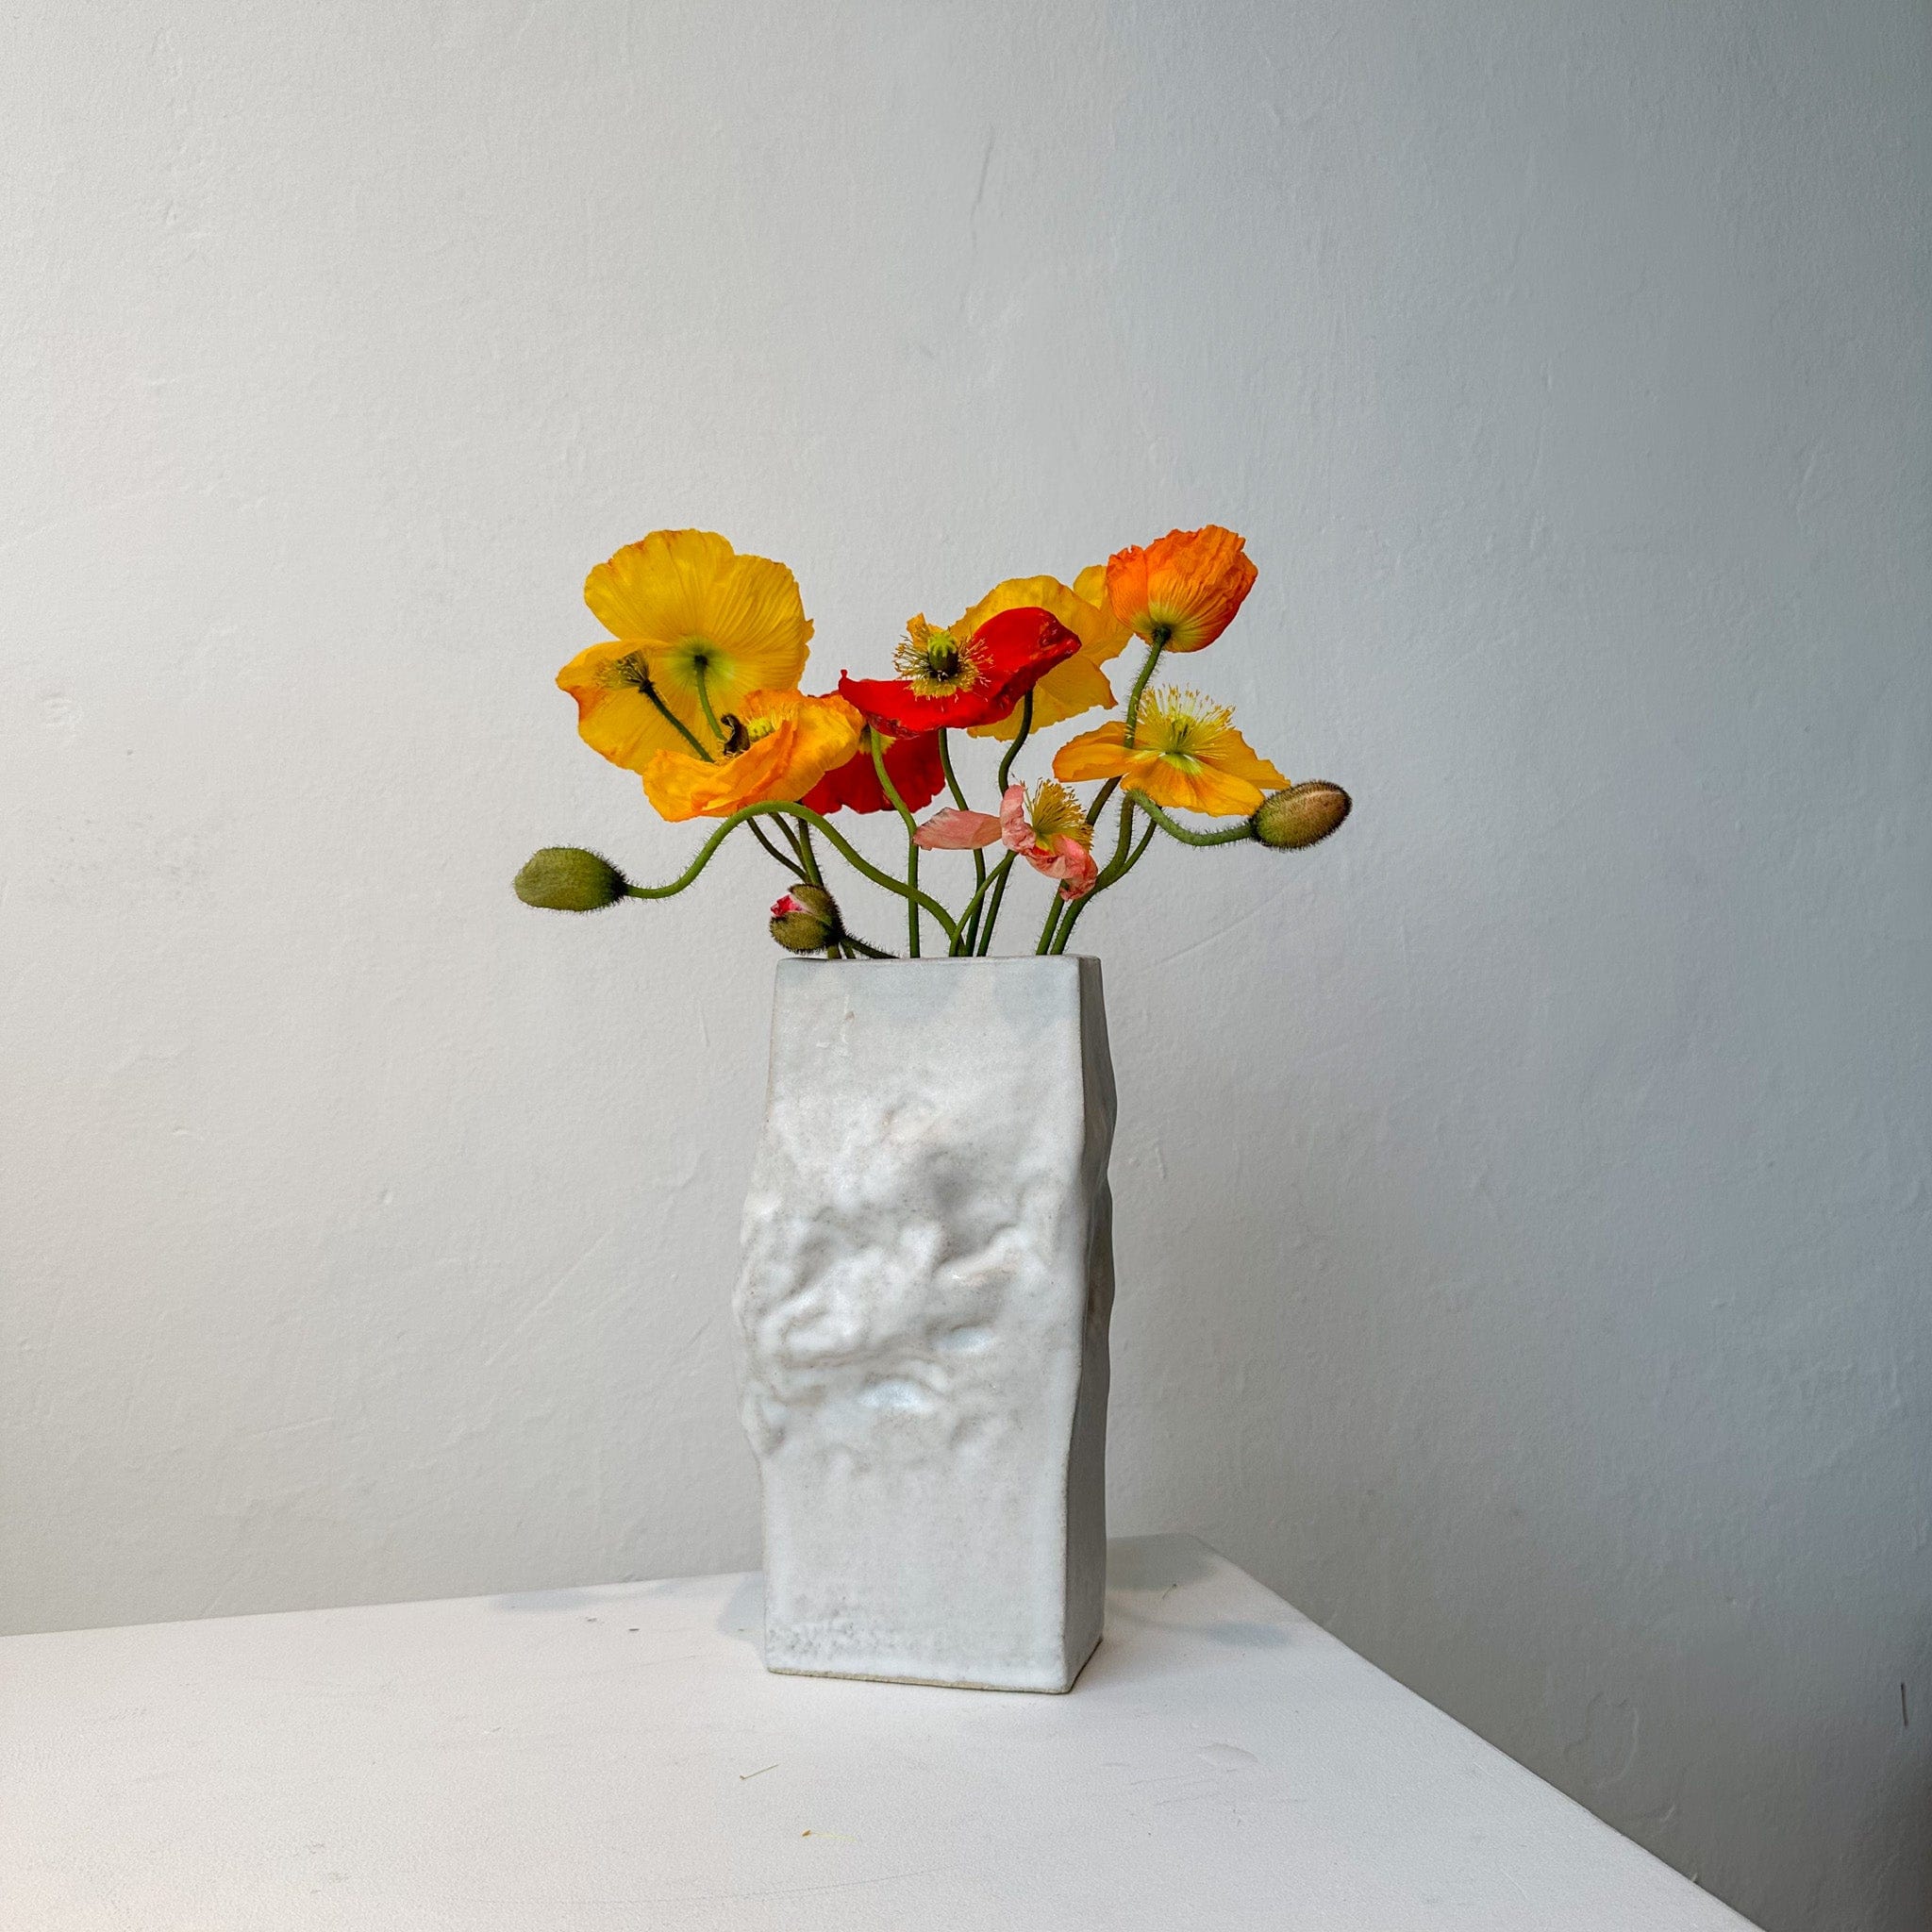 Nedda Atassi Vases Square Crinkle Vase by Nedda Atassi